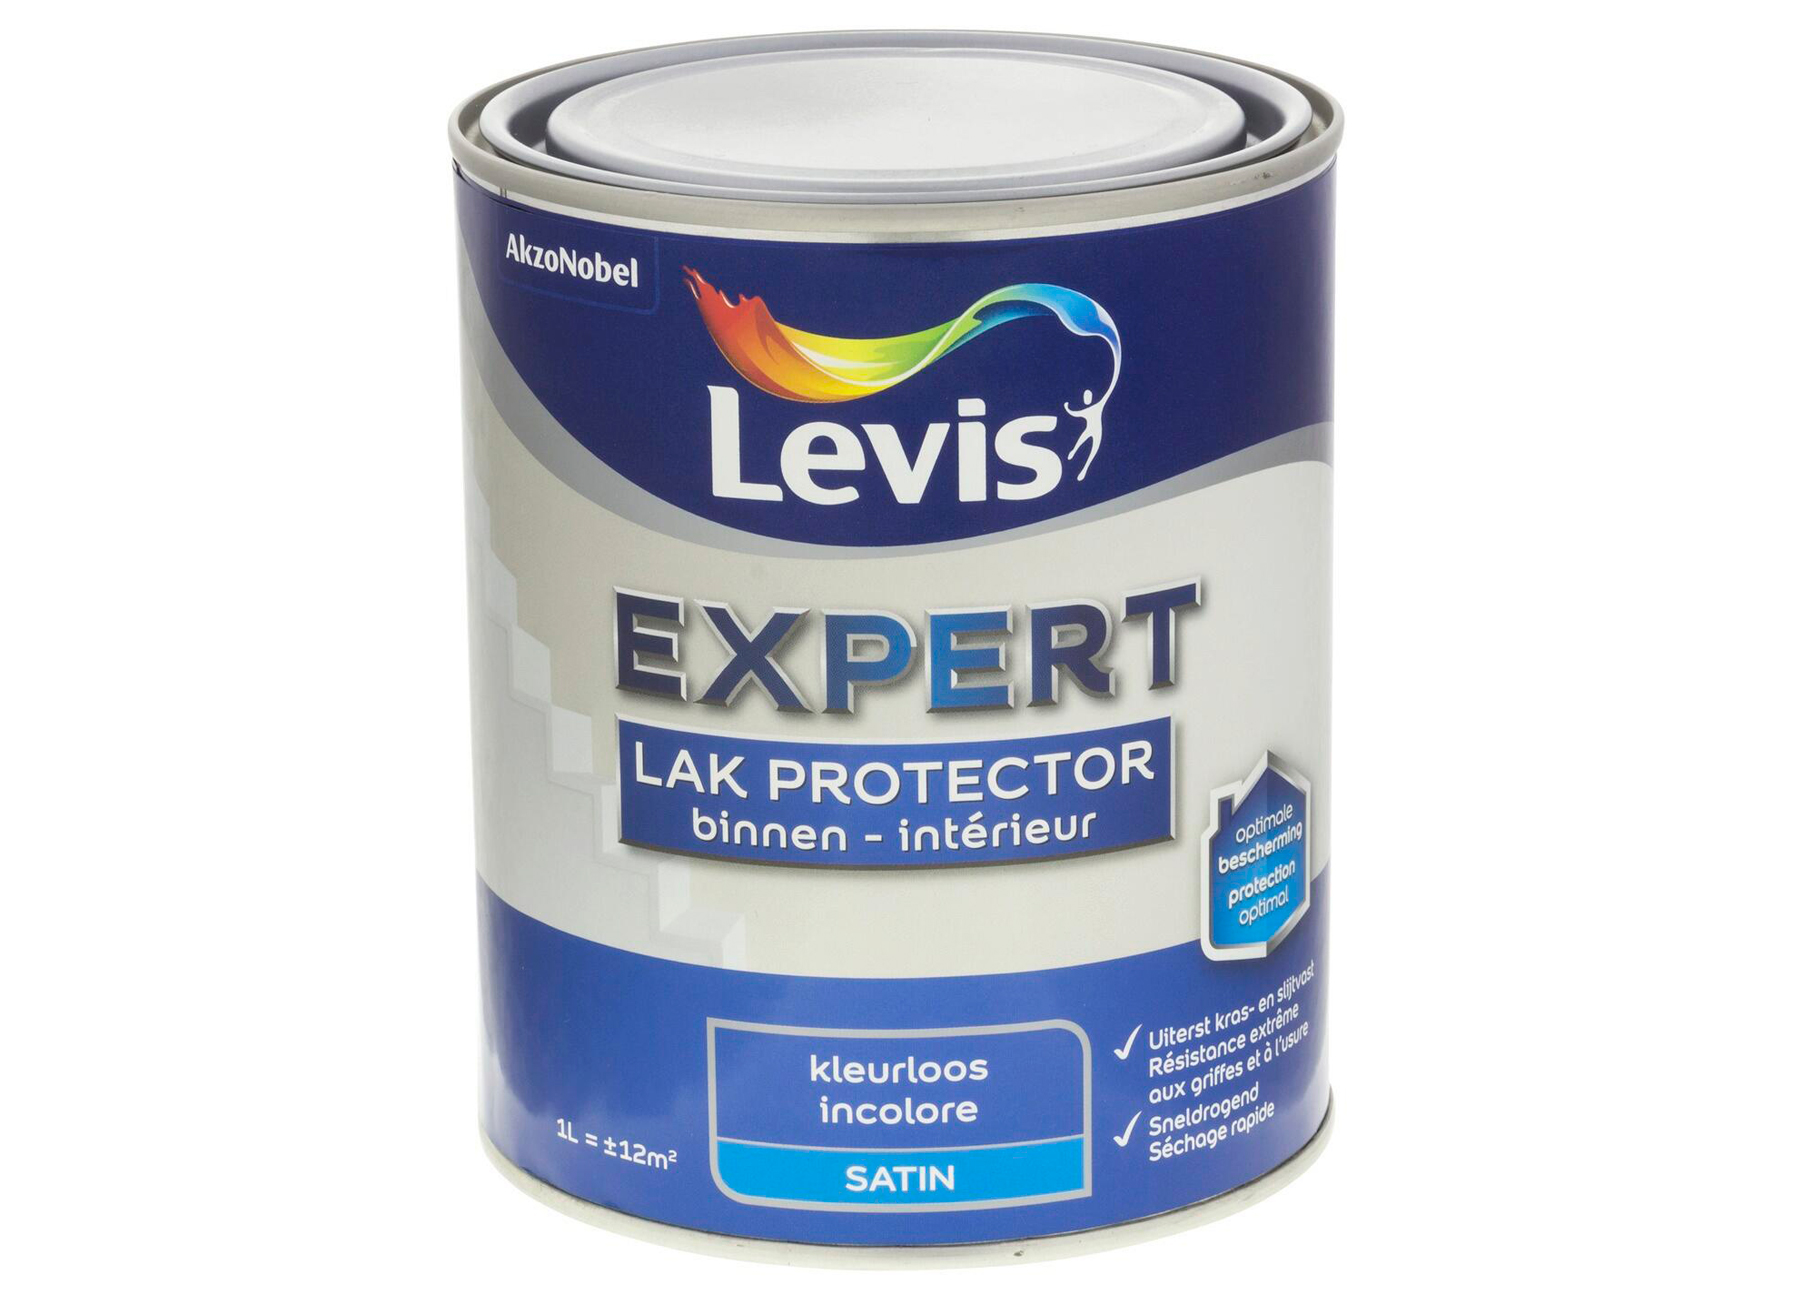 LEVIS EXPERT LAK PROTECTOR TRANSPARANT 1L